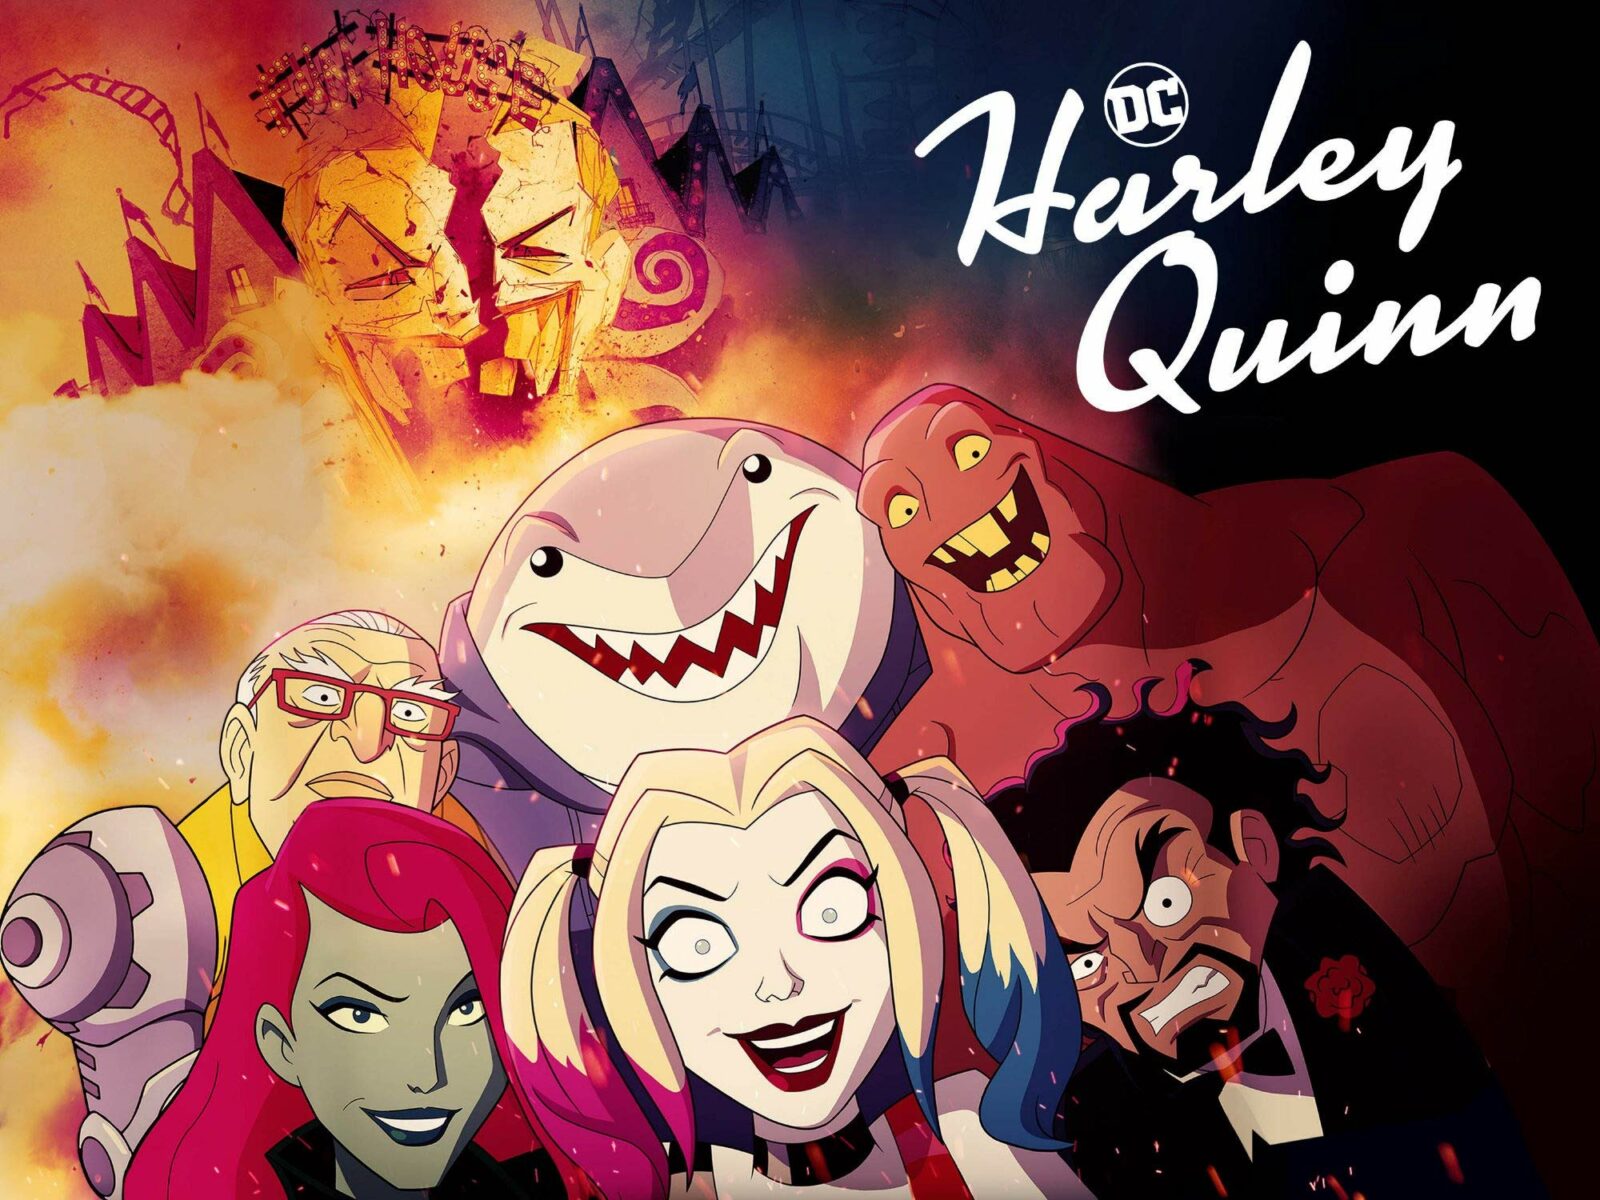 La serie Harley Quinn pubblica il primo episodio su YouTube per tutti da guardare!